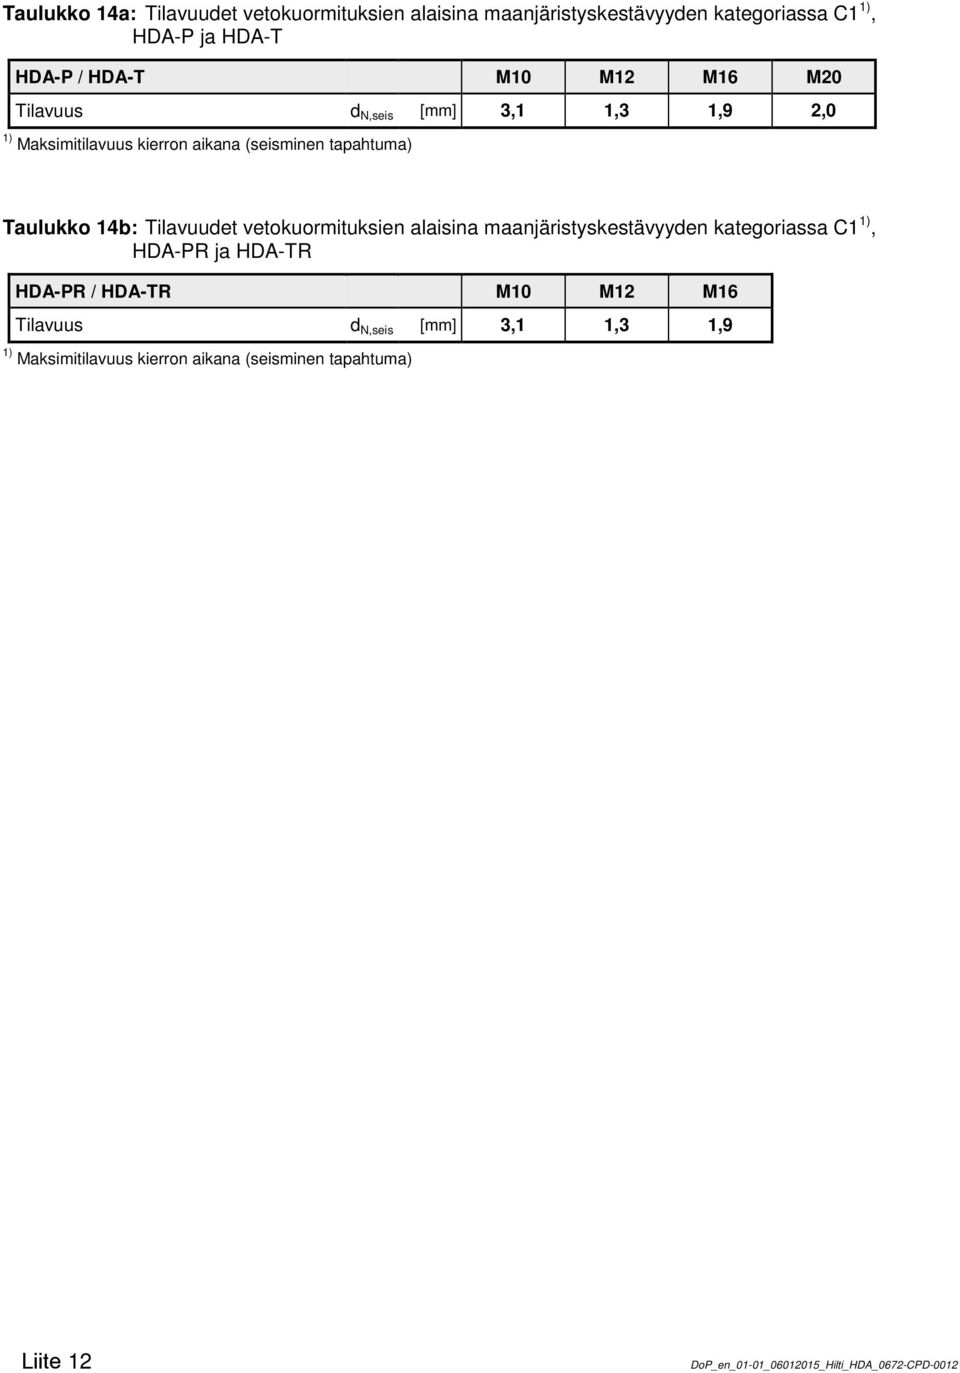 Taulukko 14b: Tilavuudet vetokuormituksien alaisina maanjäristyskestävyyden kategoriassa C1, HDA-PR